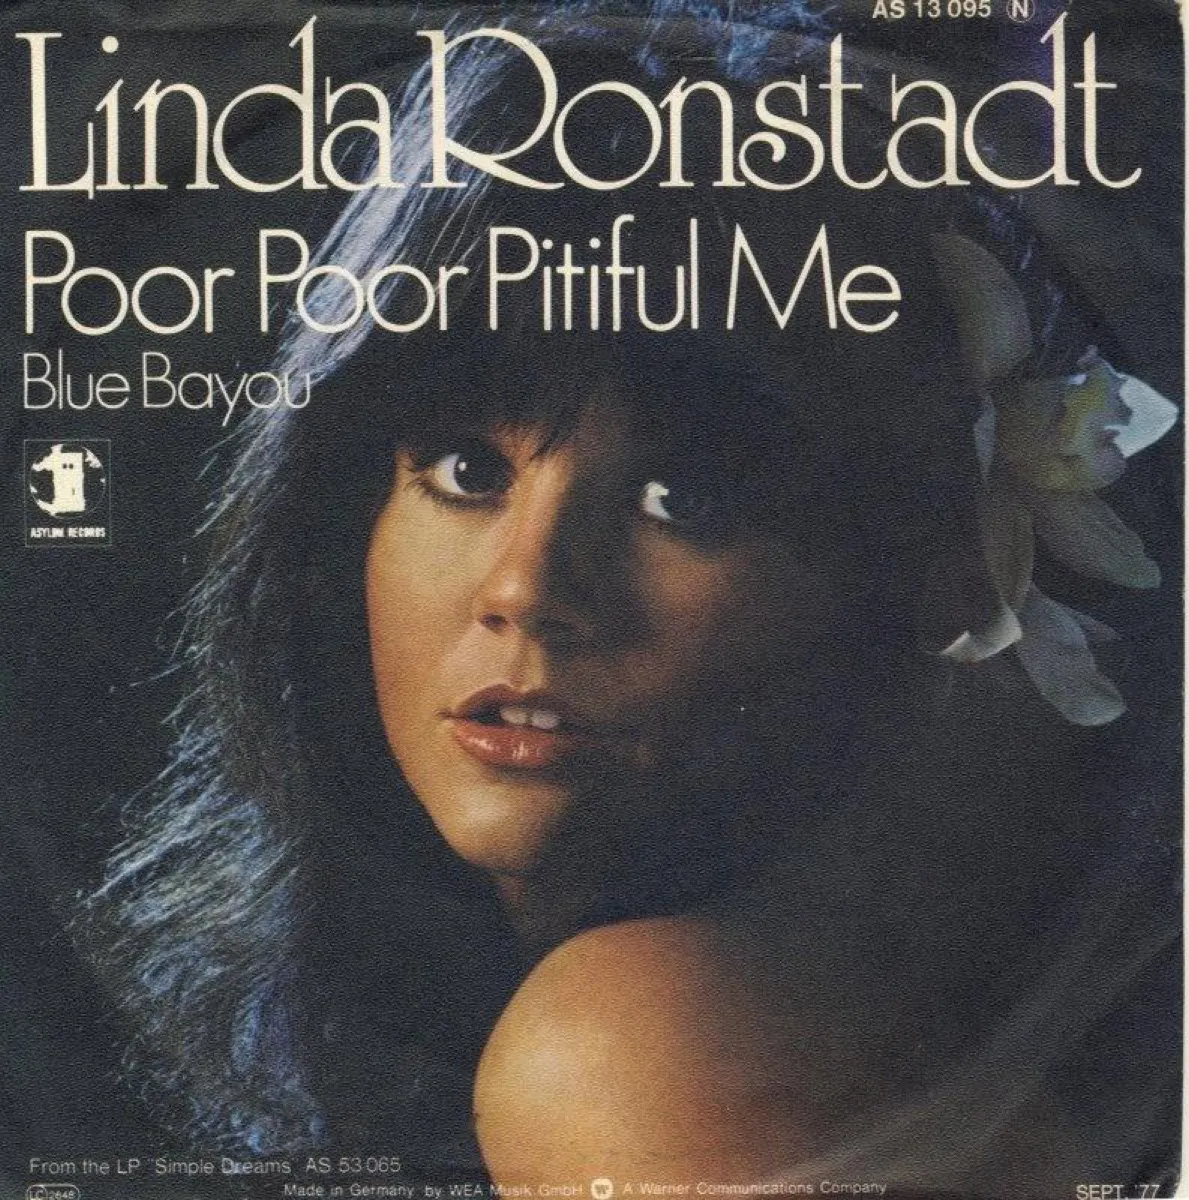 Linda Ronstadt "Poor Poor Pitiful Me" Album Cover